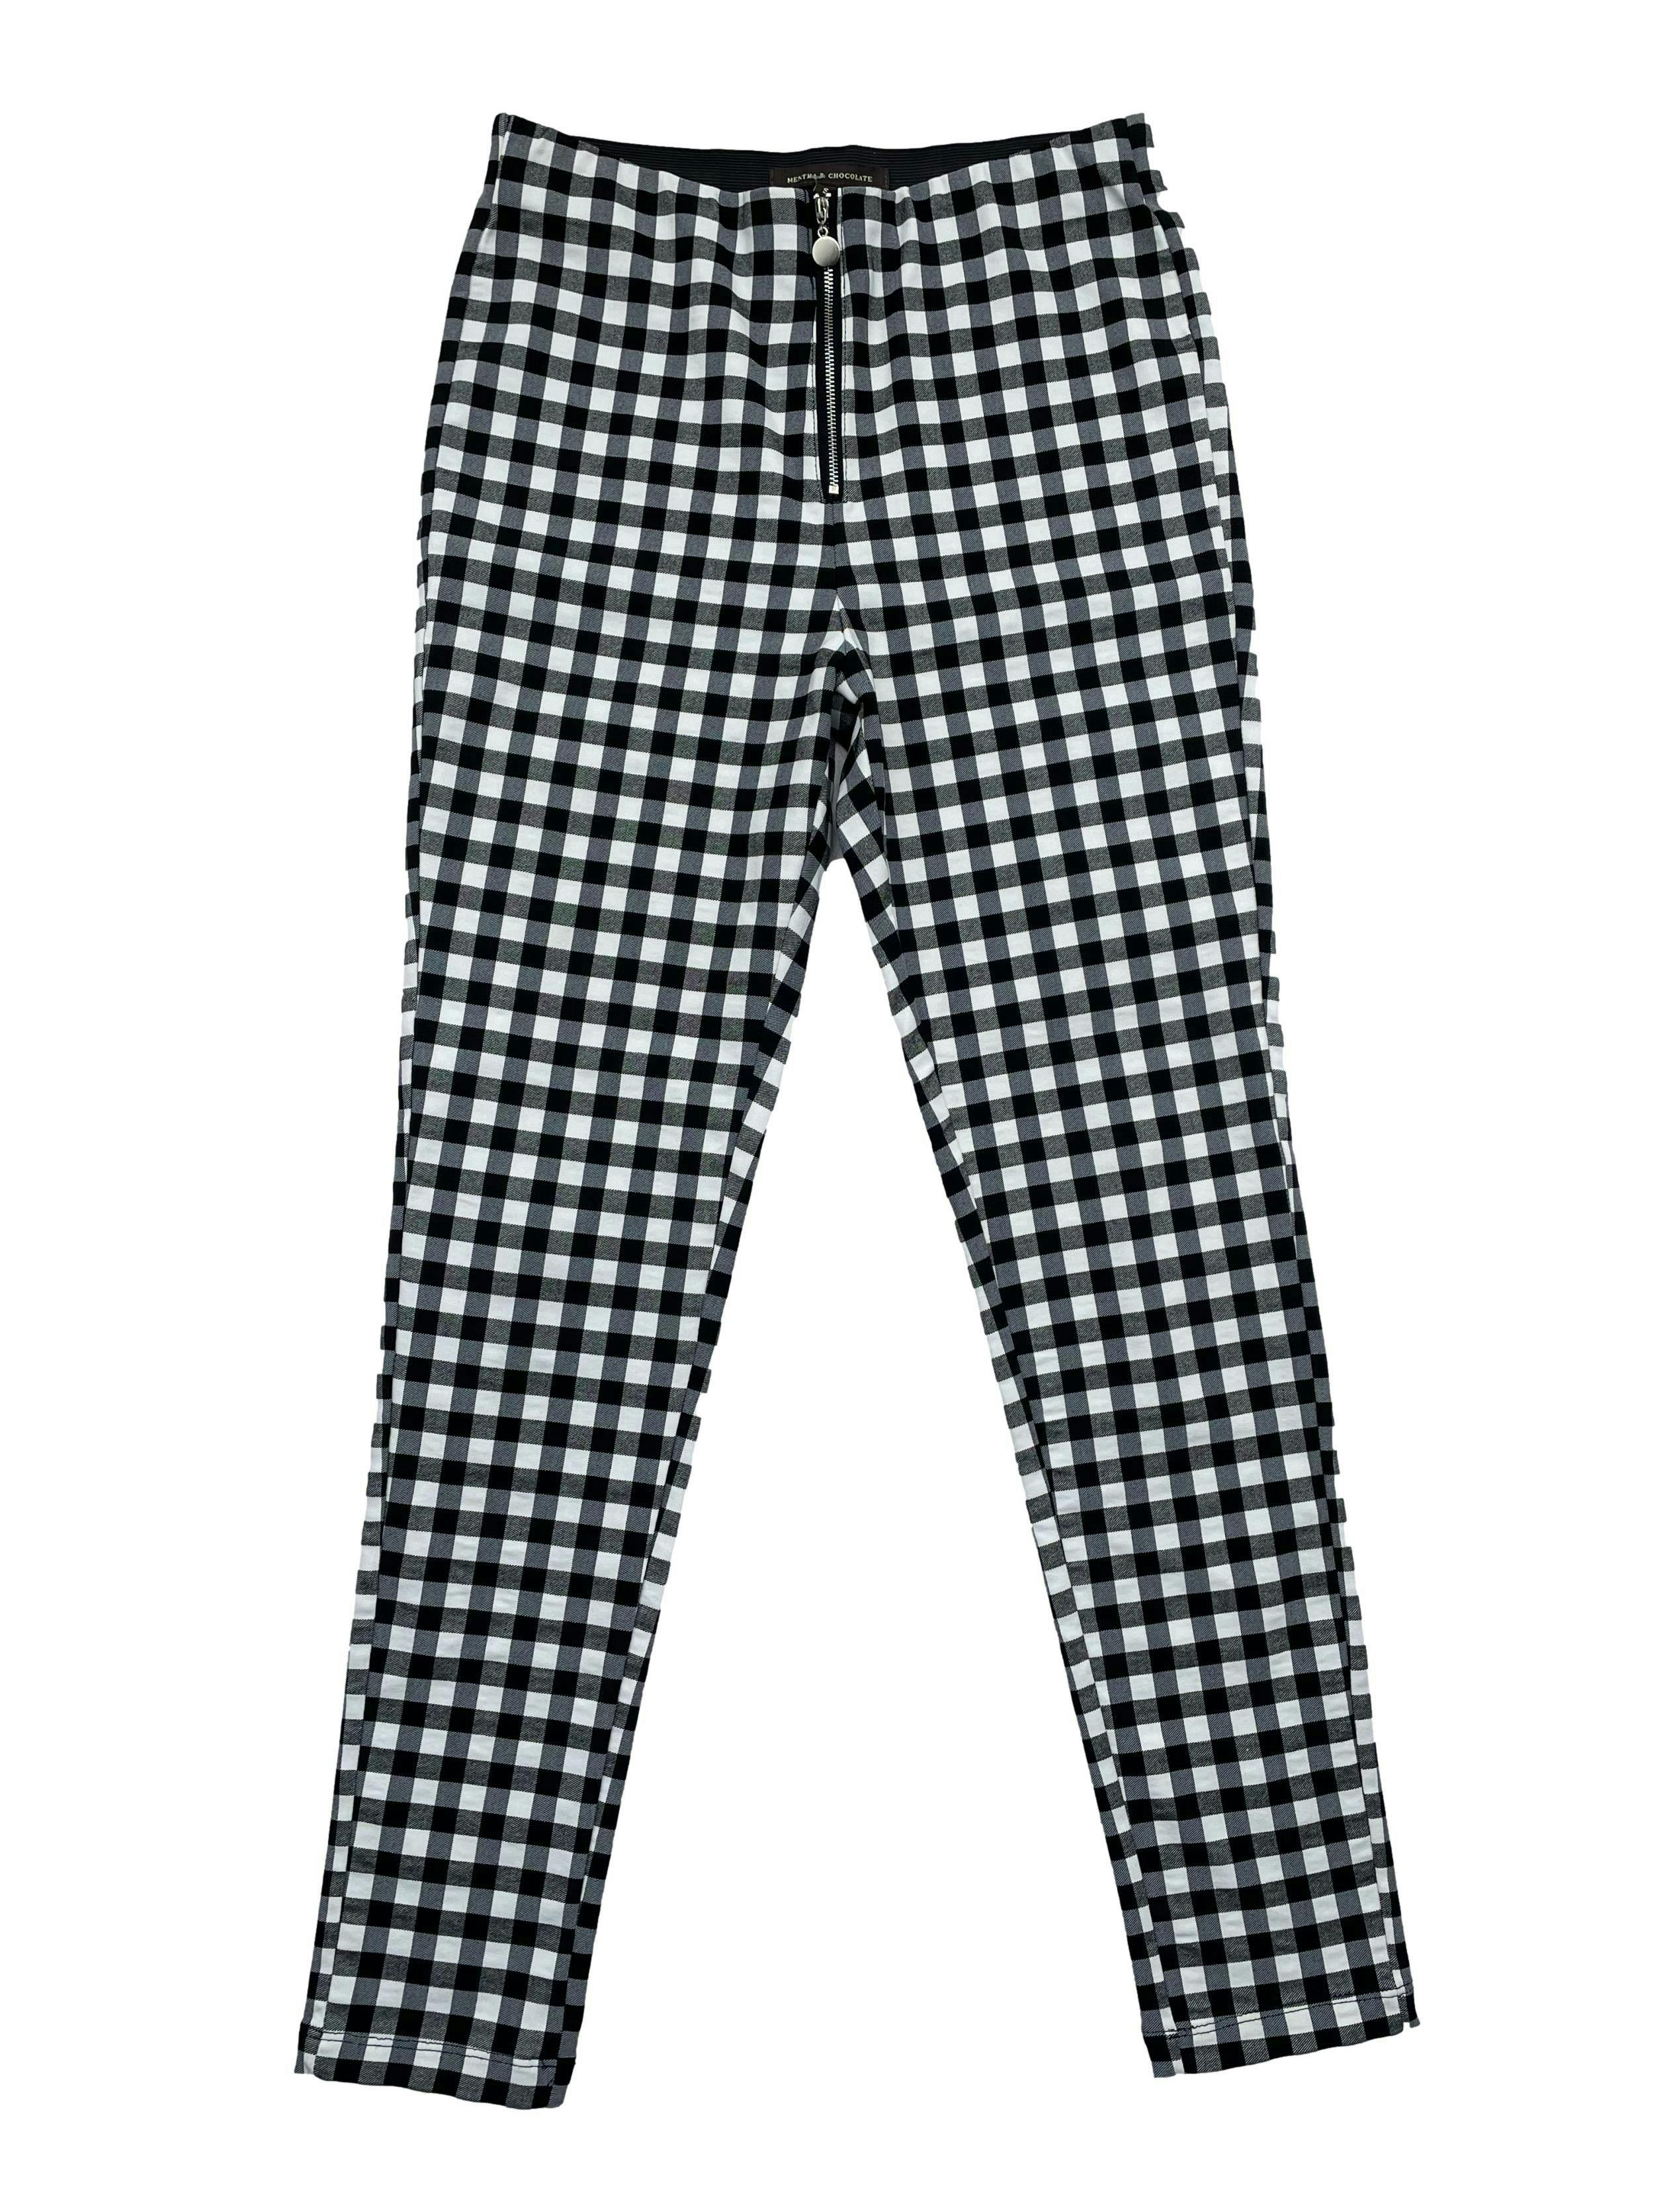 Pantalón Mentha & Chocolate slim fit, a cuadros blanco y negro, con elástico en cintura y cierre metálico frontal. Cintura 70cm sin estirar, Largo 96cm. Precio original S/199